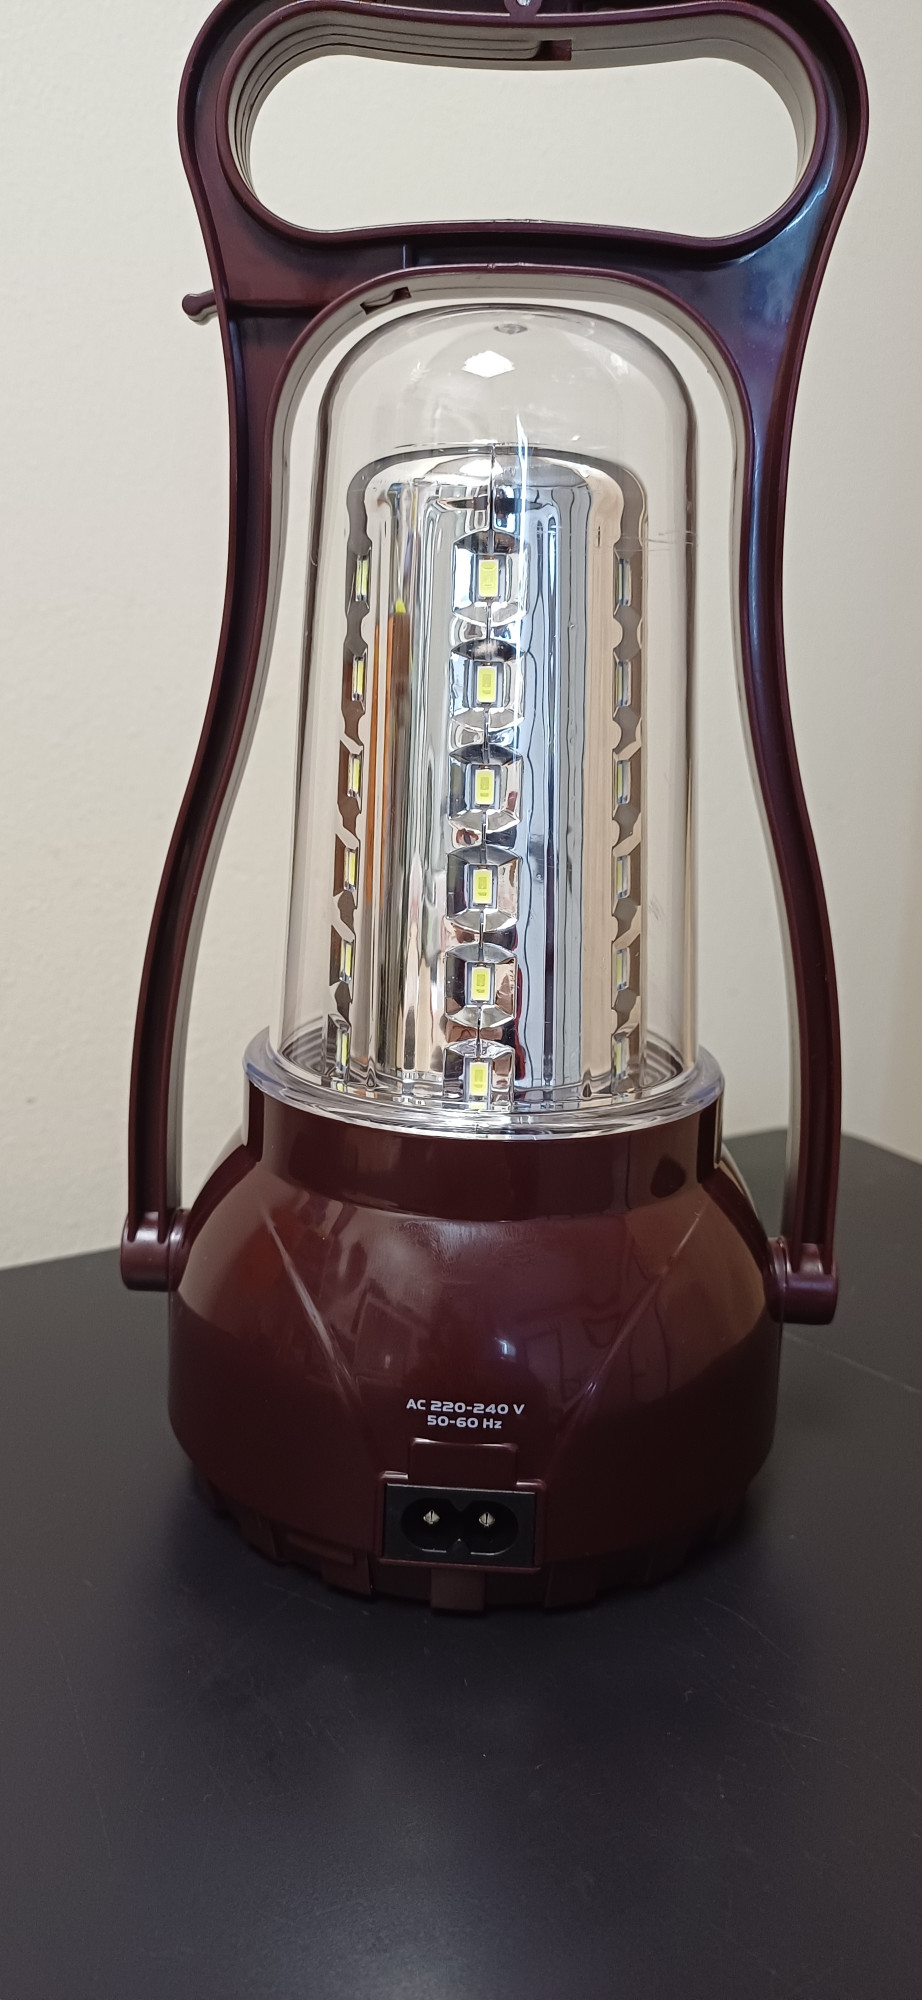 Фонарь-лампа Tiross TS-690-2 аккумуляторная 3